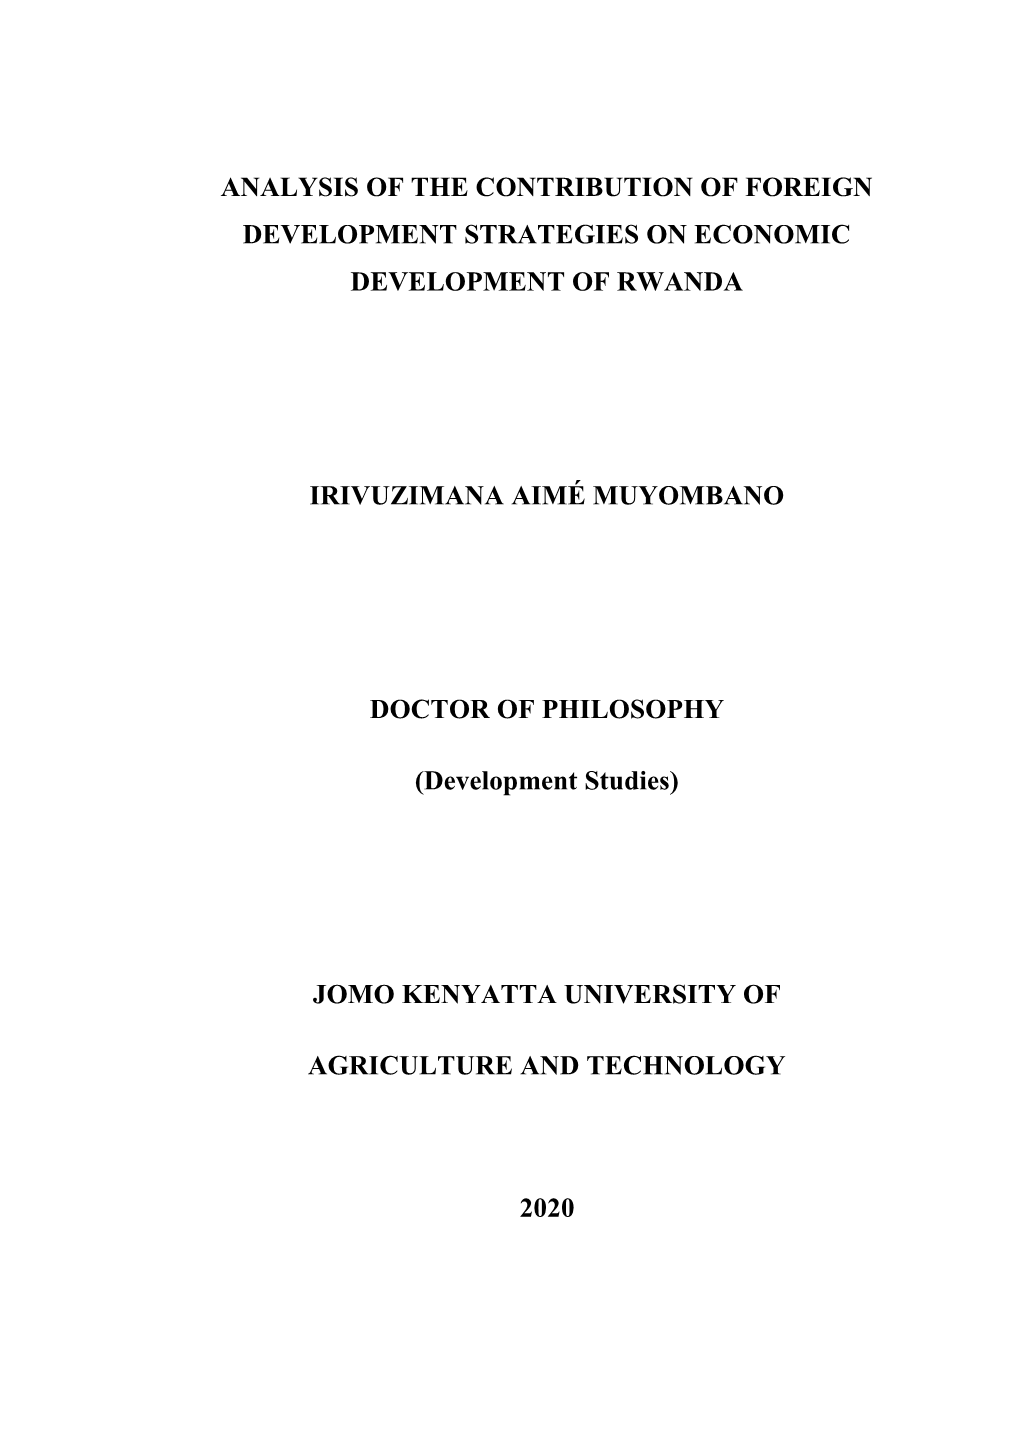 Analysis of the Contribution of Foreign Development Strategies on Economic Development of Rwanda Irivuzimana Aimé Muyombano